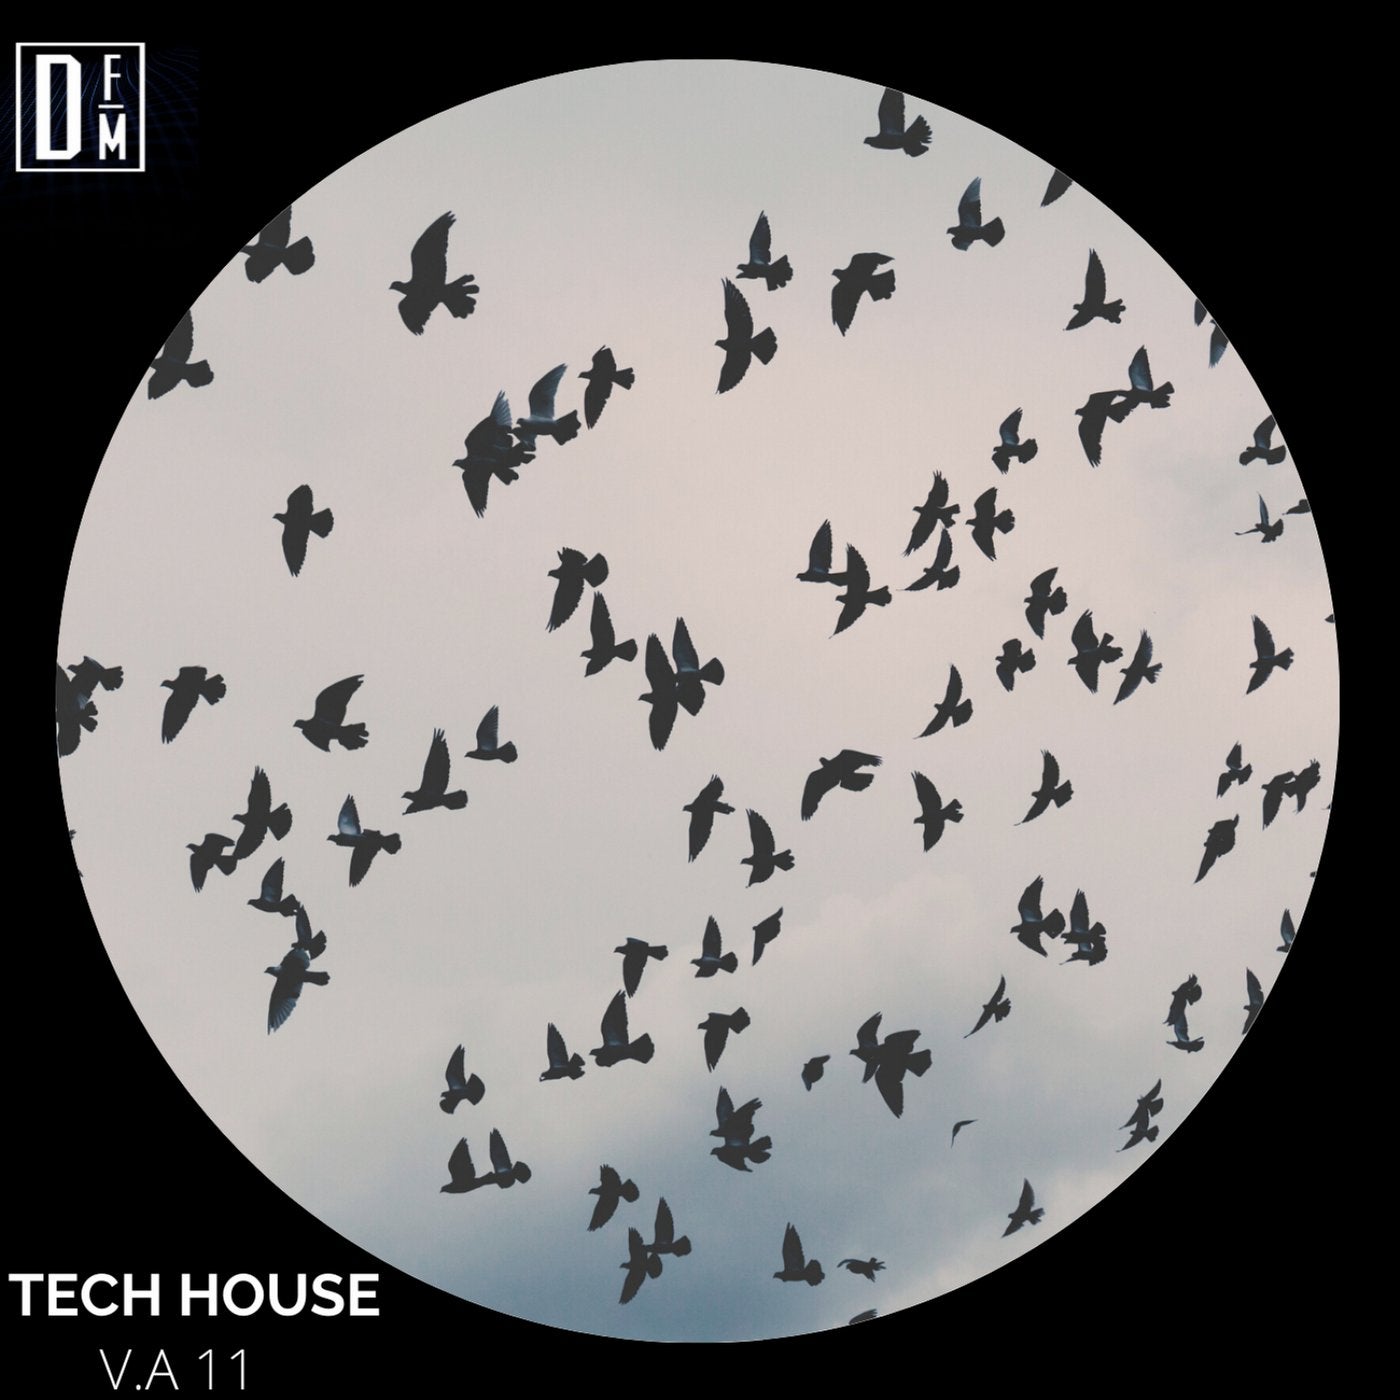 Tech House v.a 11